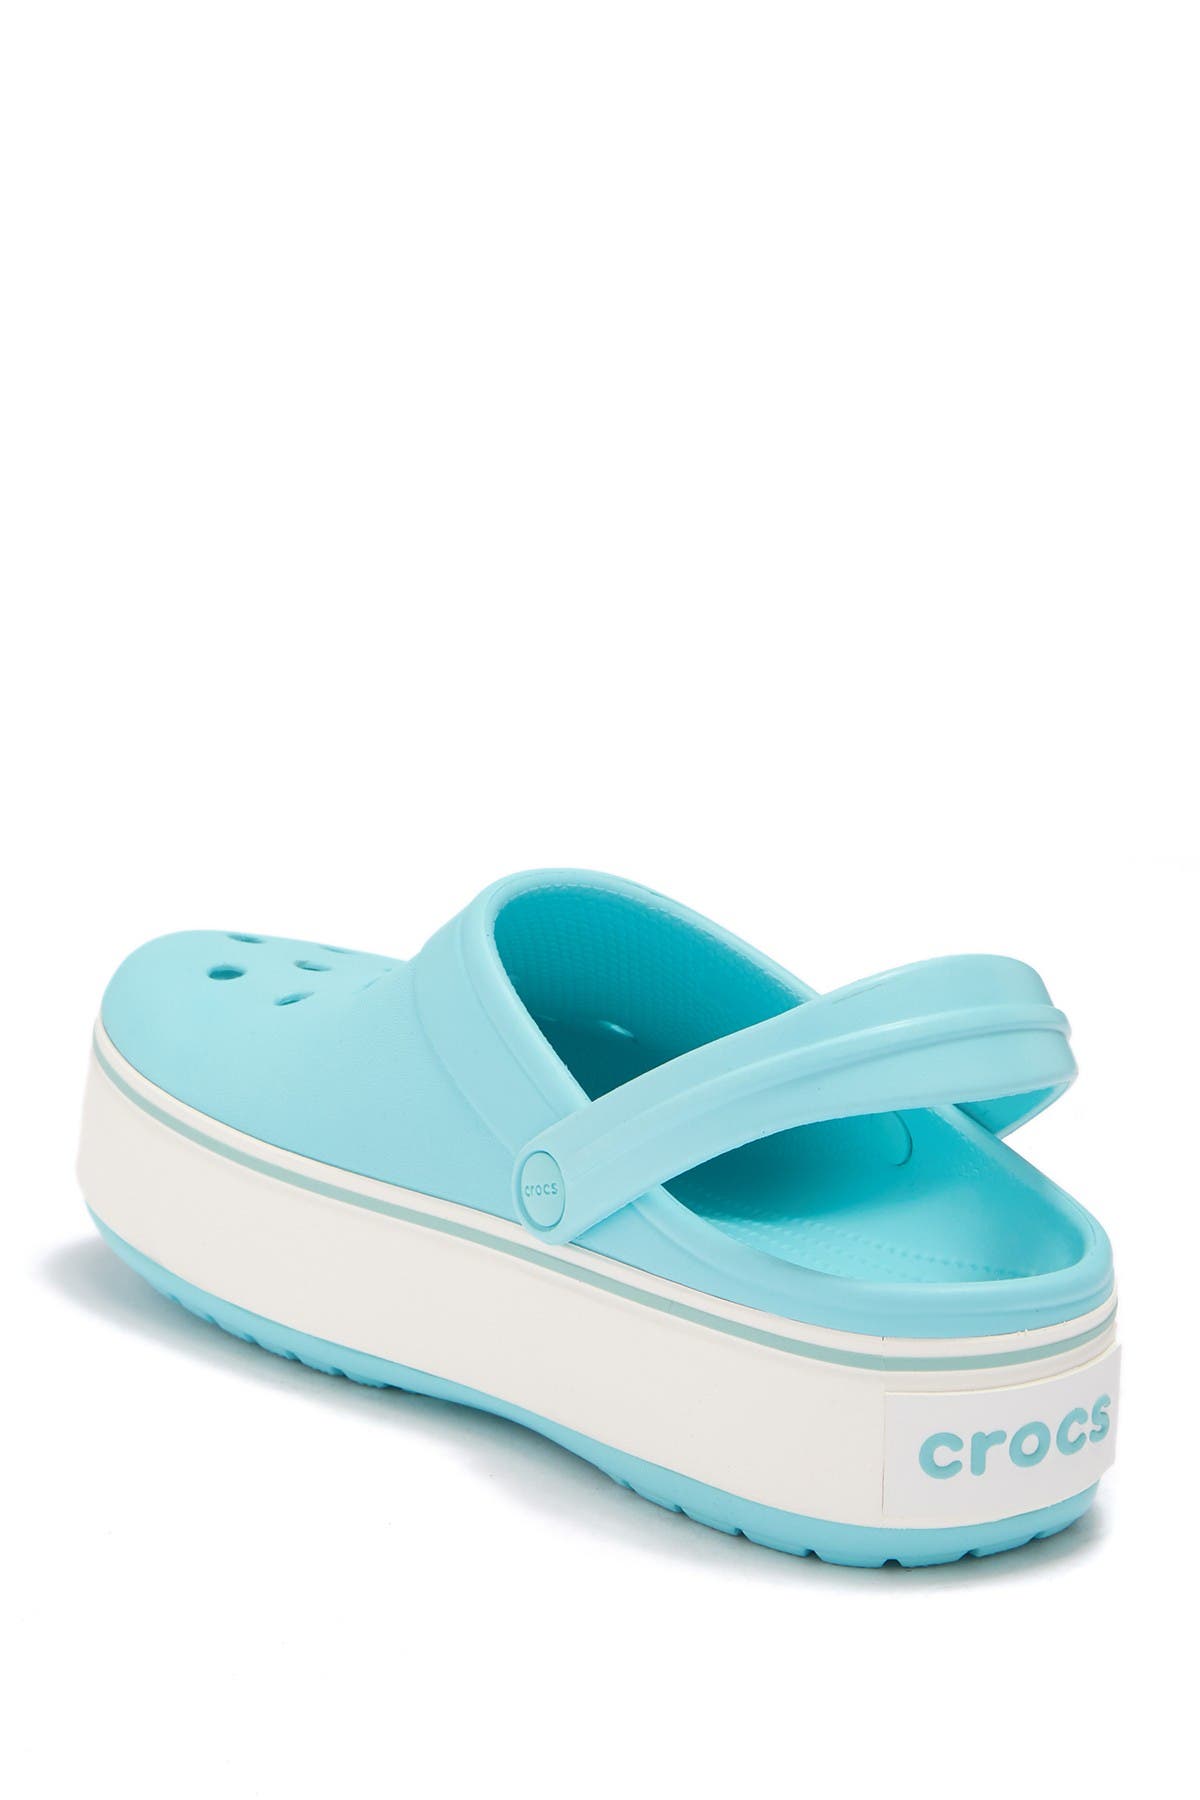 crocs women's crocband platform clog